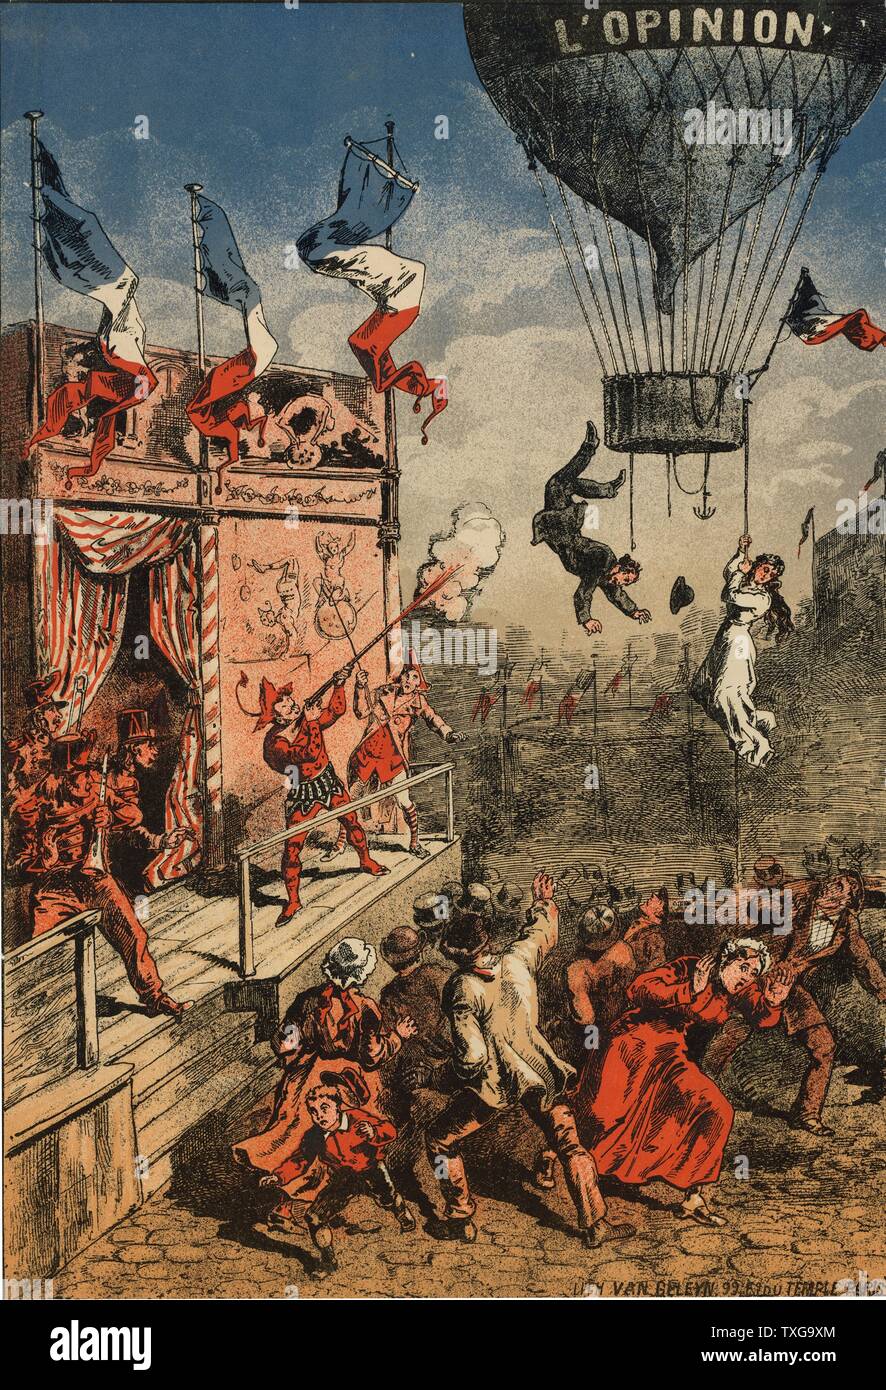 Impression d'humour d'un artiste de cirque sur une scène extérieure à tirer sur un ballon, marqués 'L'opinion'. Un homme saute de la télécabine et une femme s'accroche à une corde - 1870-1900. Banque D'Images